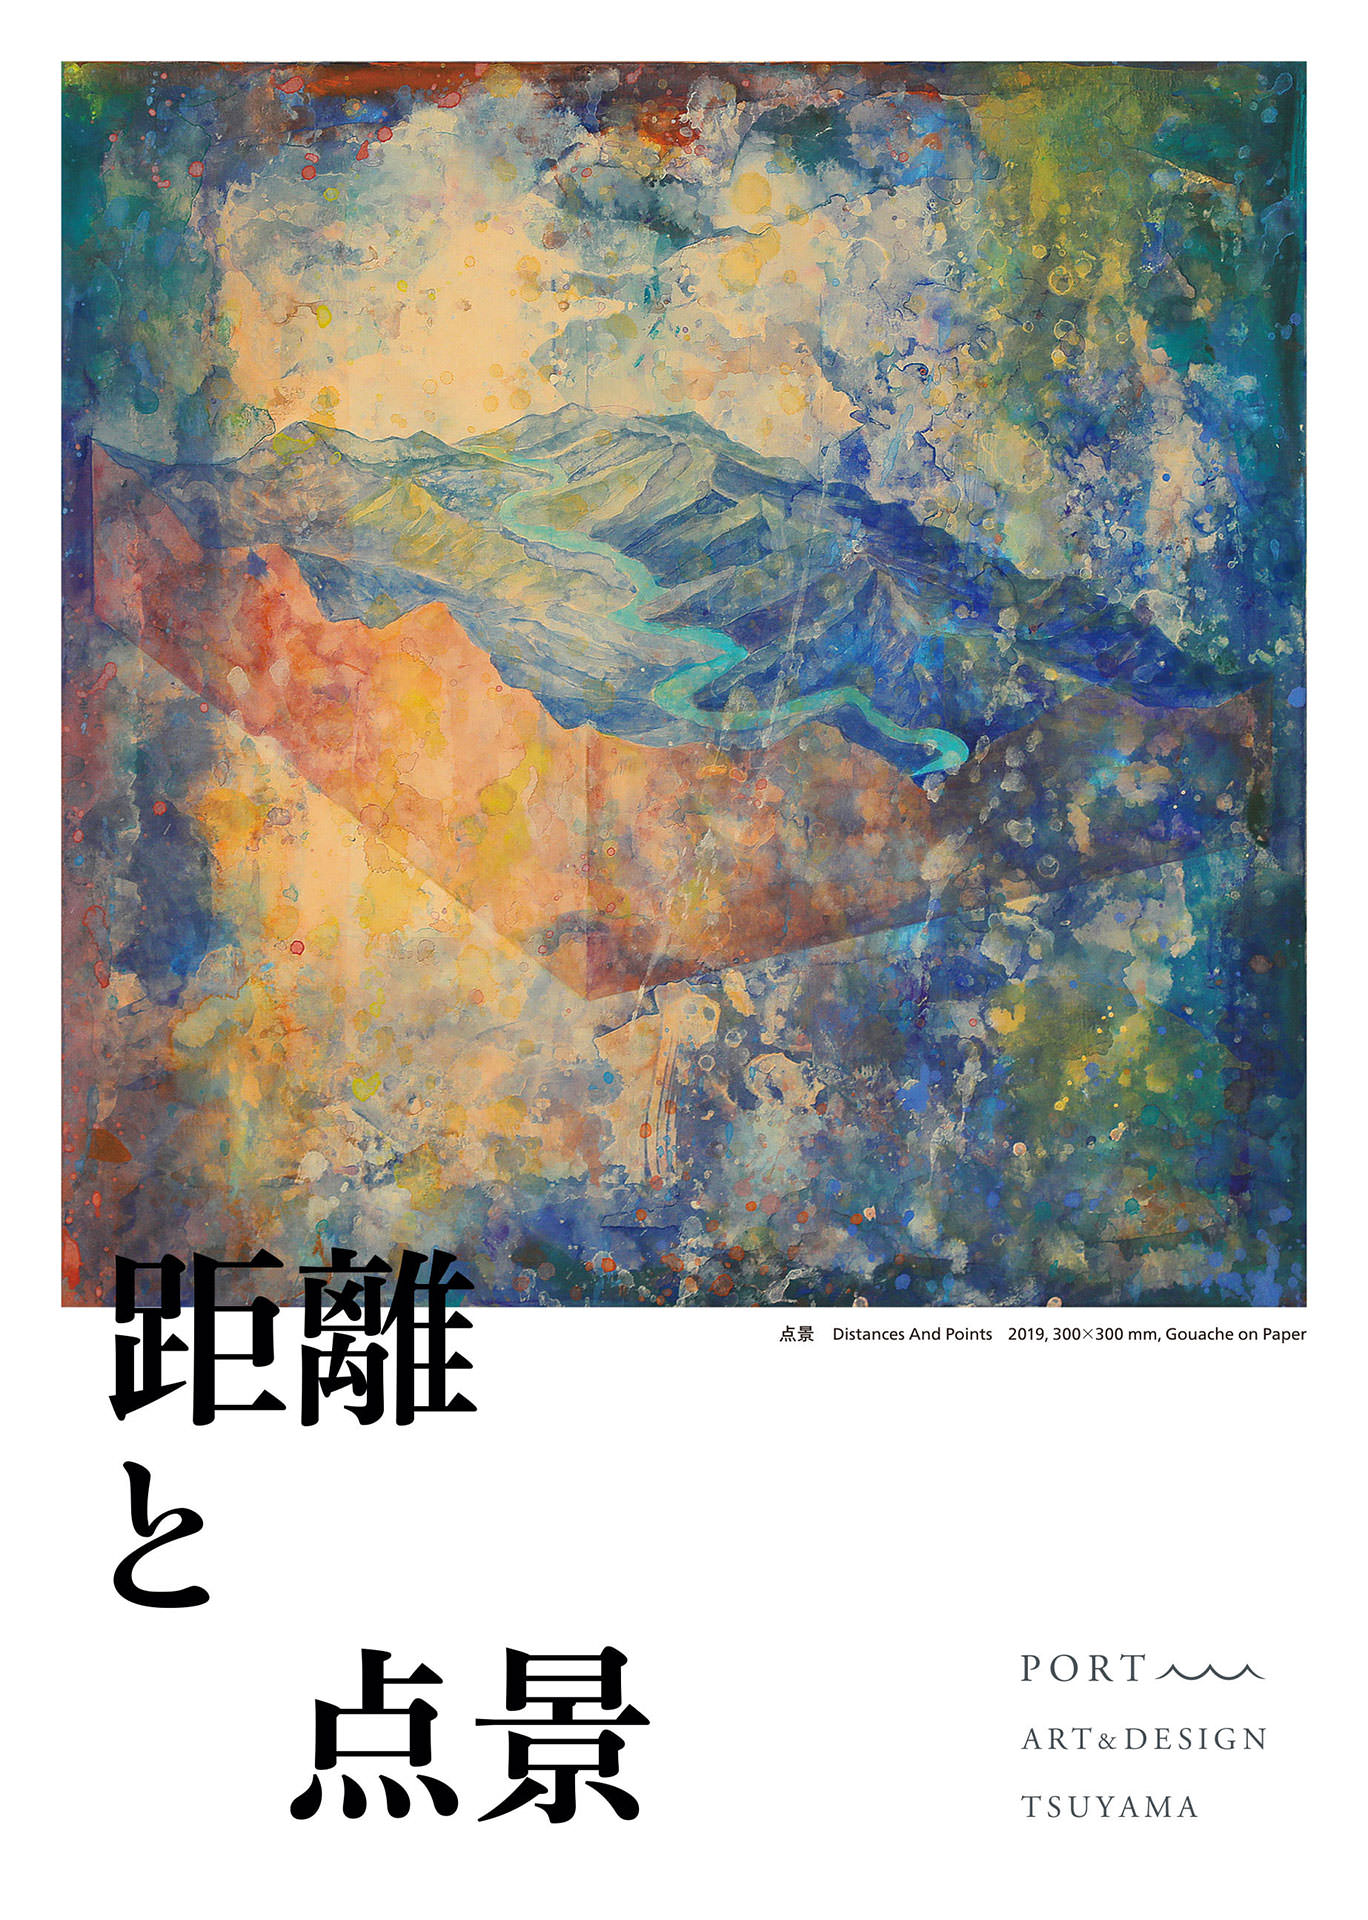 片山高志「距離と点景」 Takashi Katayama “Distances and Points” - Alt_Medium, PORT ART & DESIGN TSUYAMA